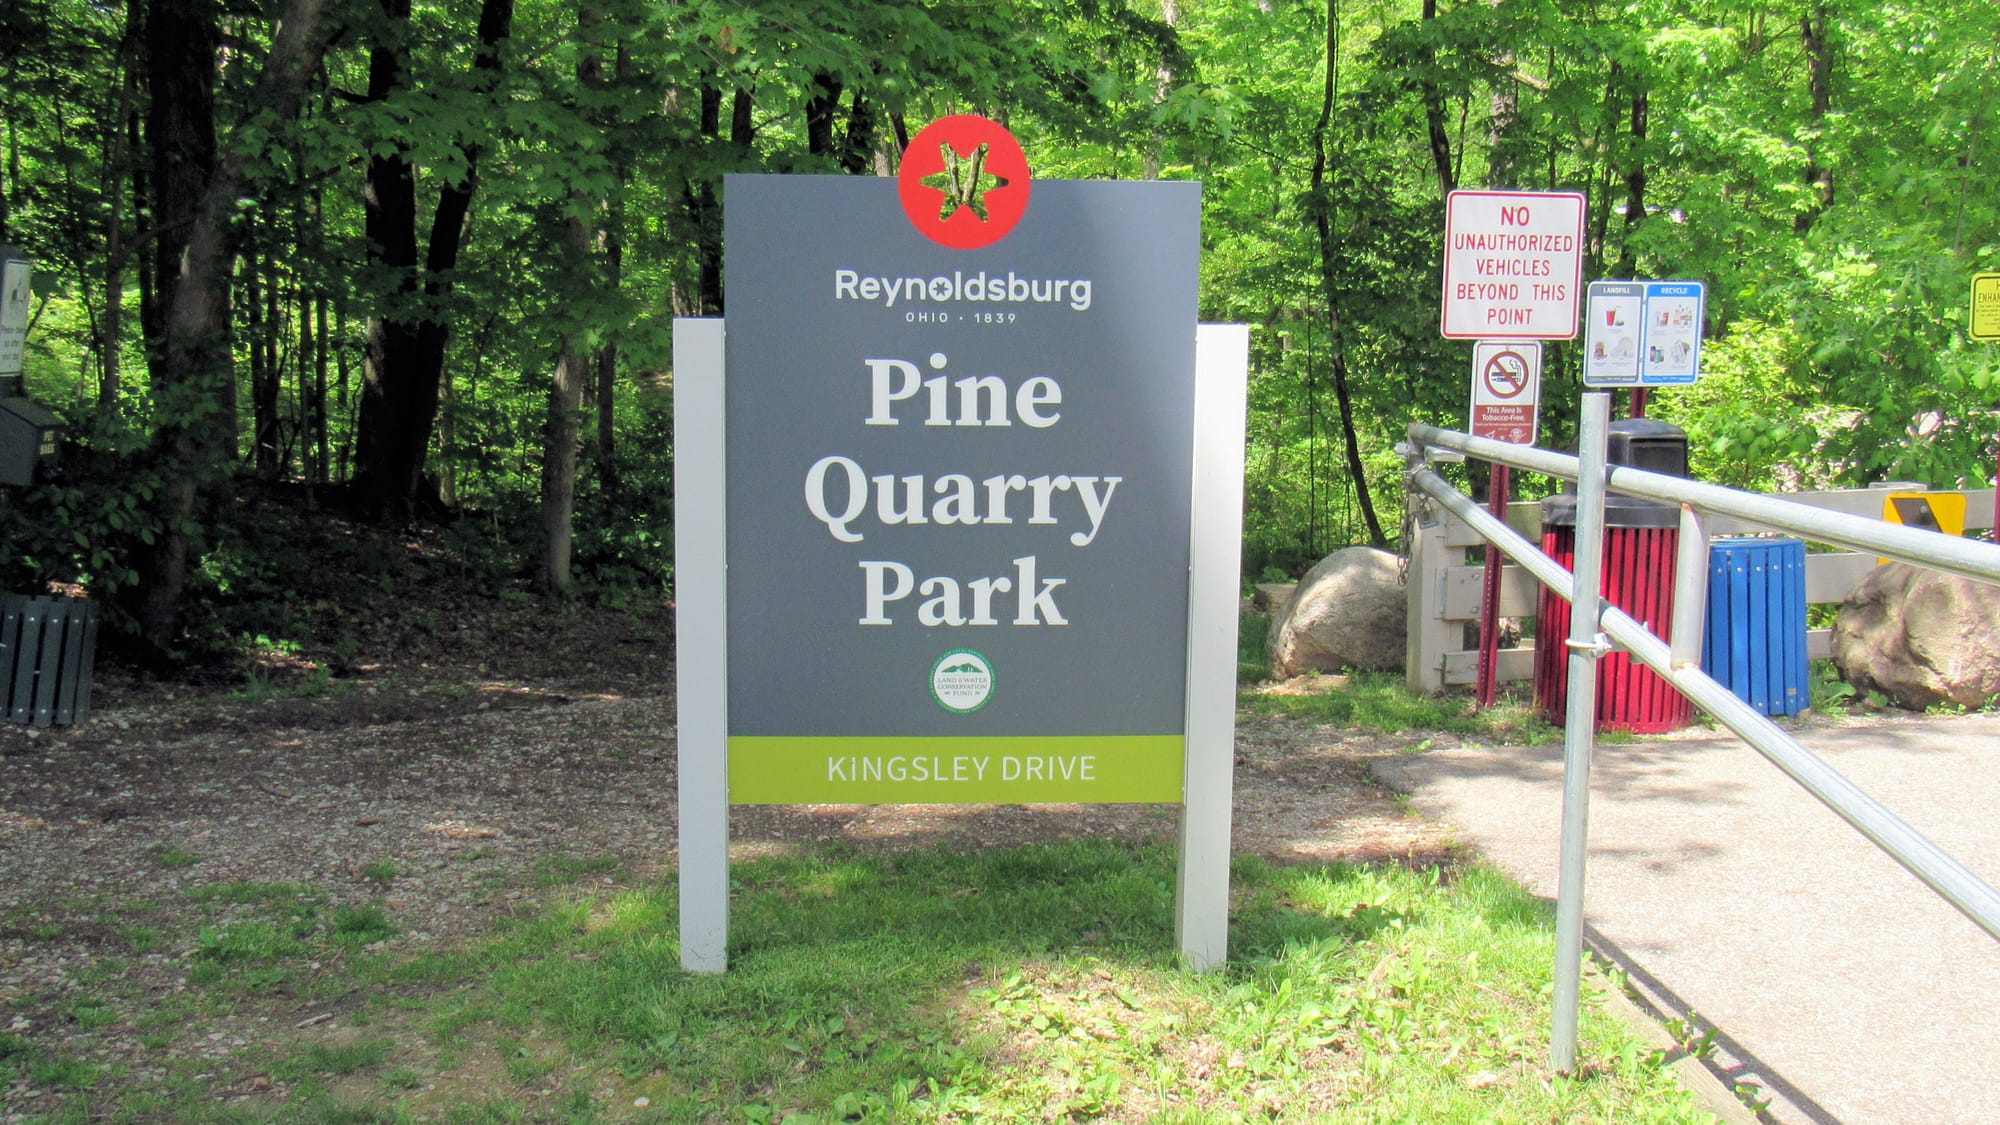 Pine Quarry Park